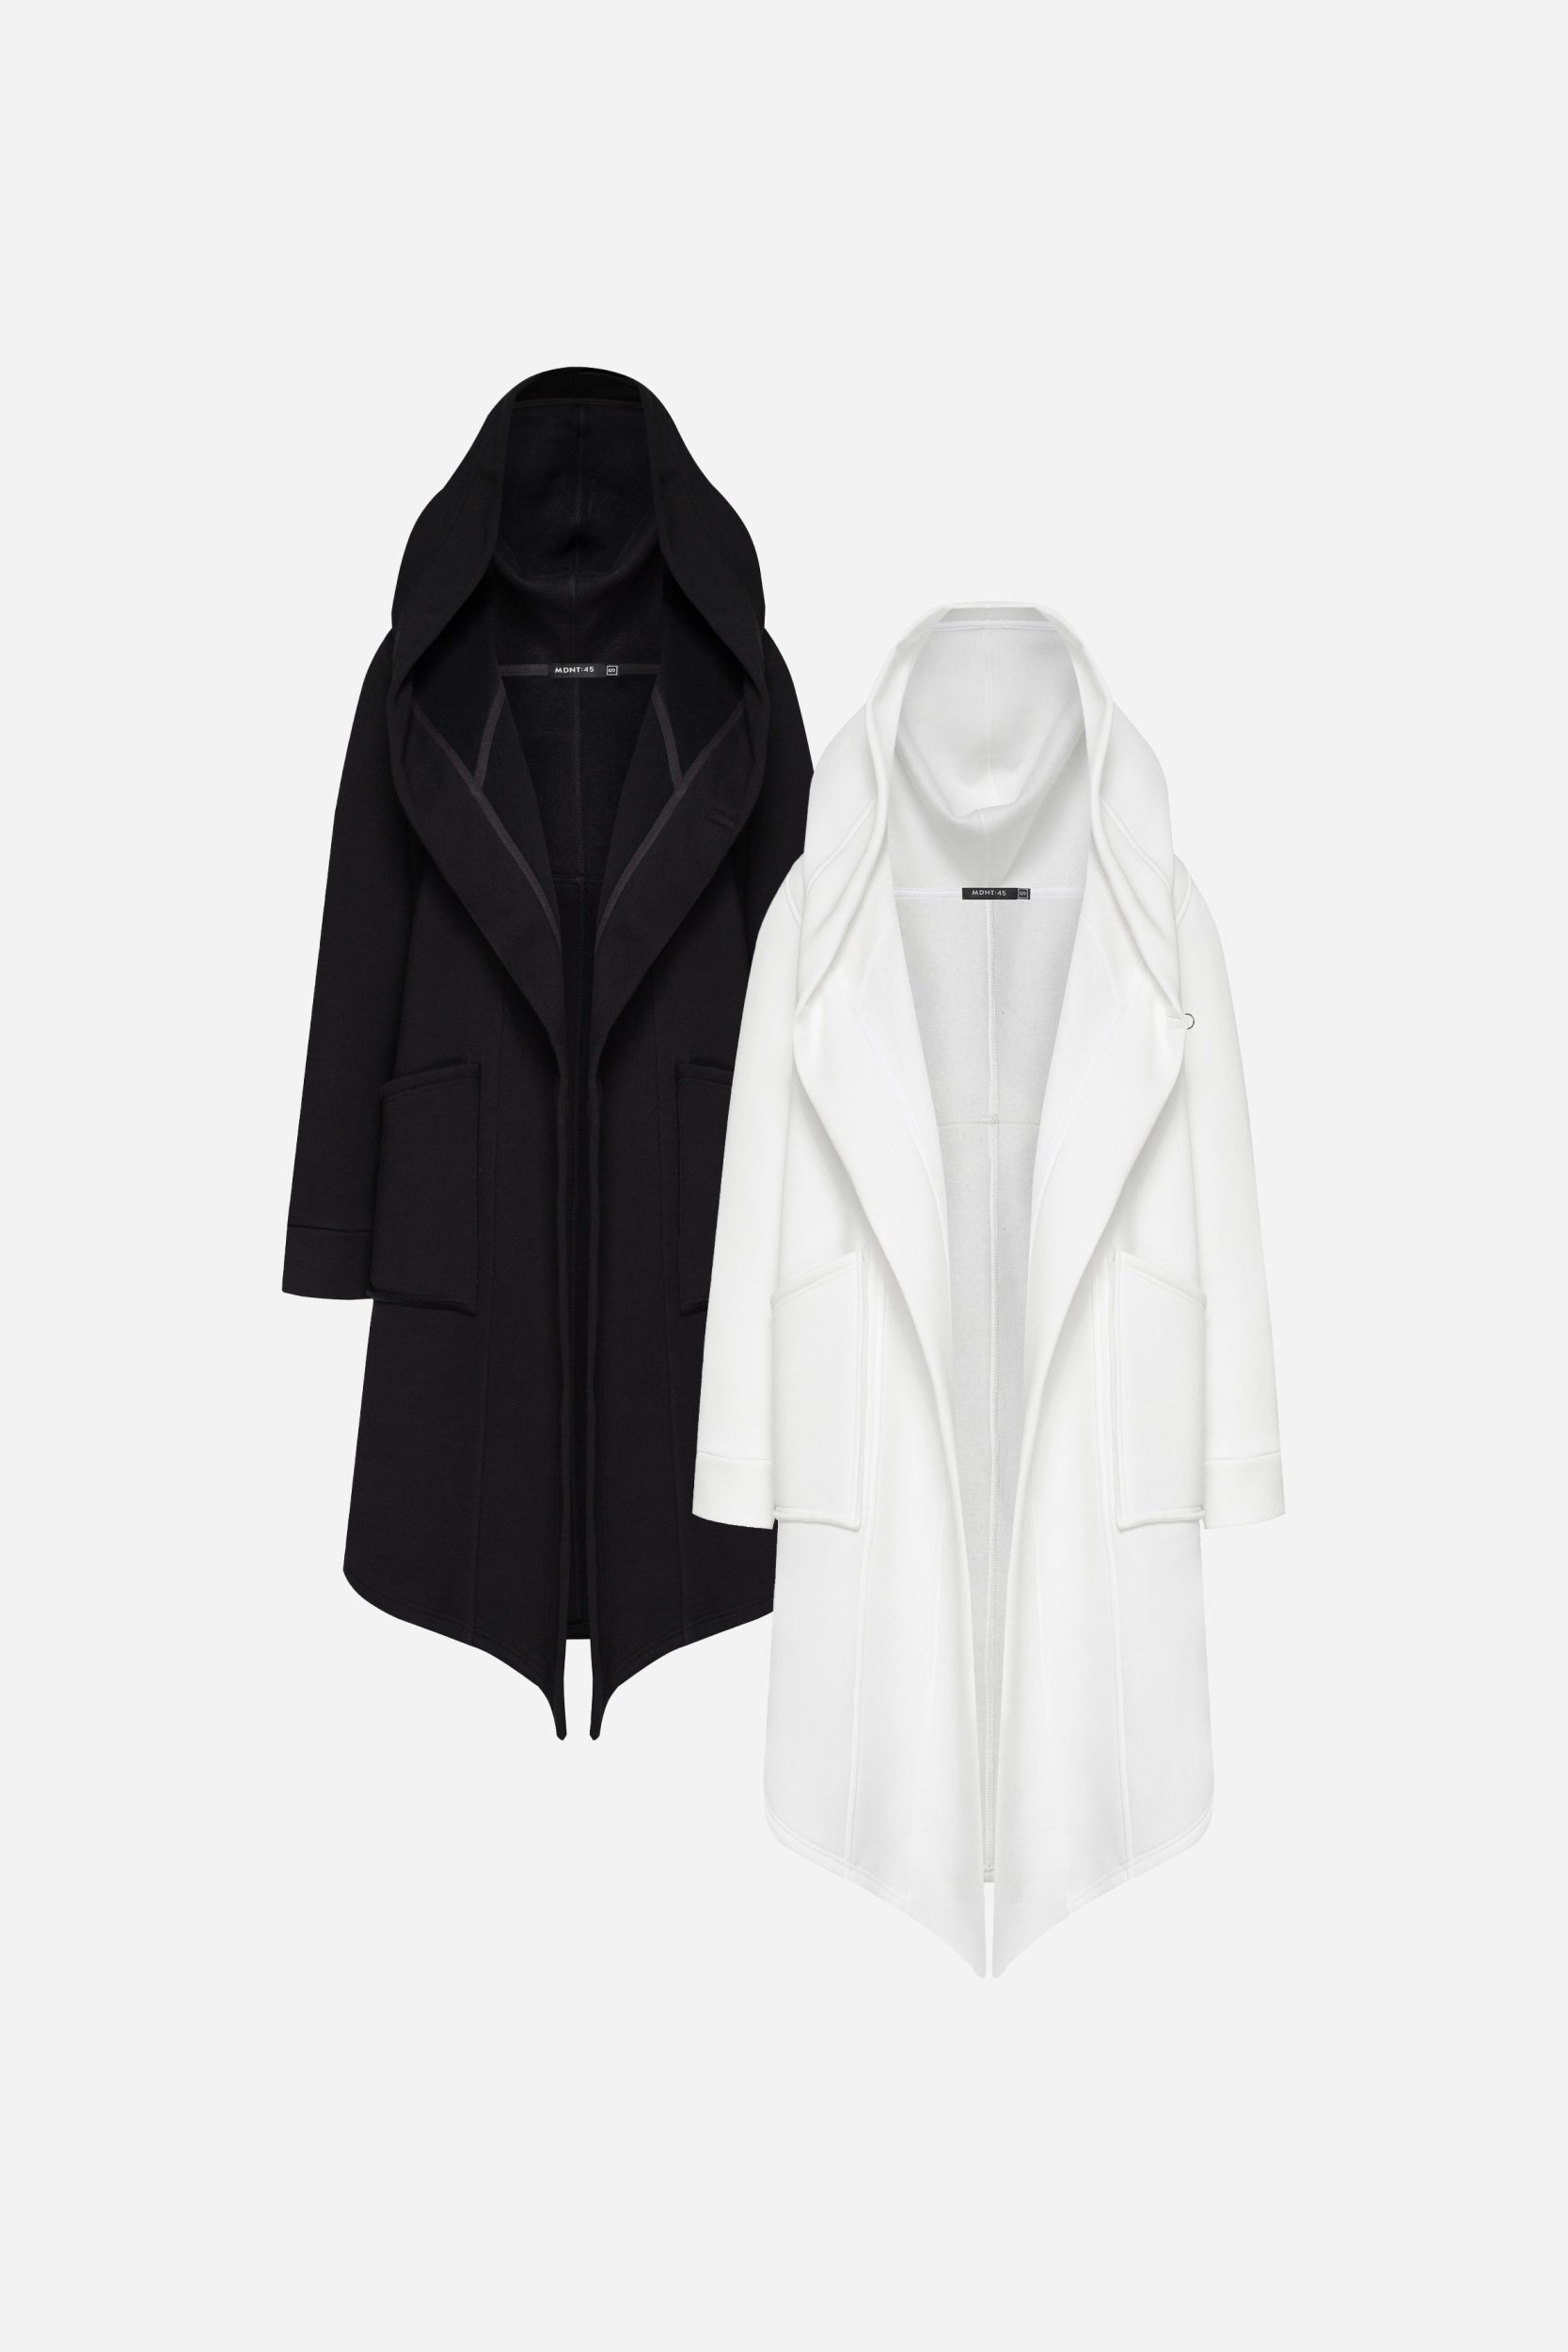 Bundle: Black & White Hooded Fleece Jacket